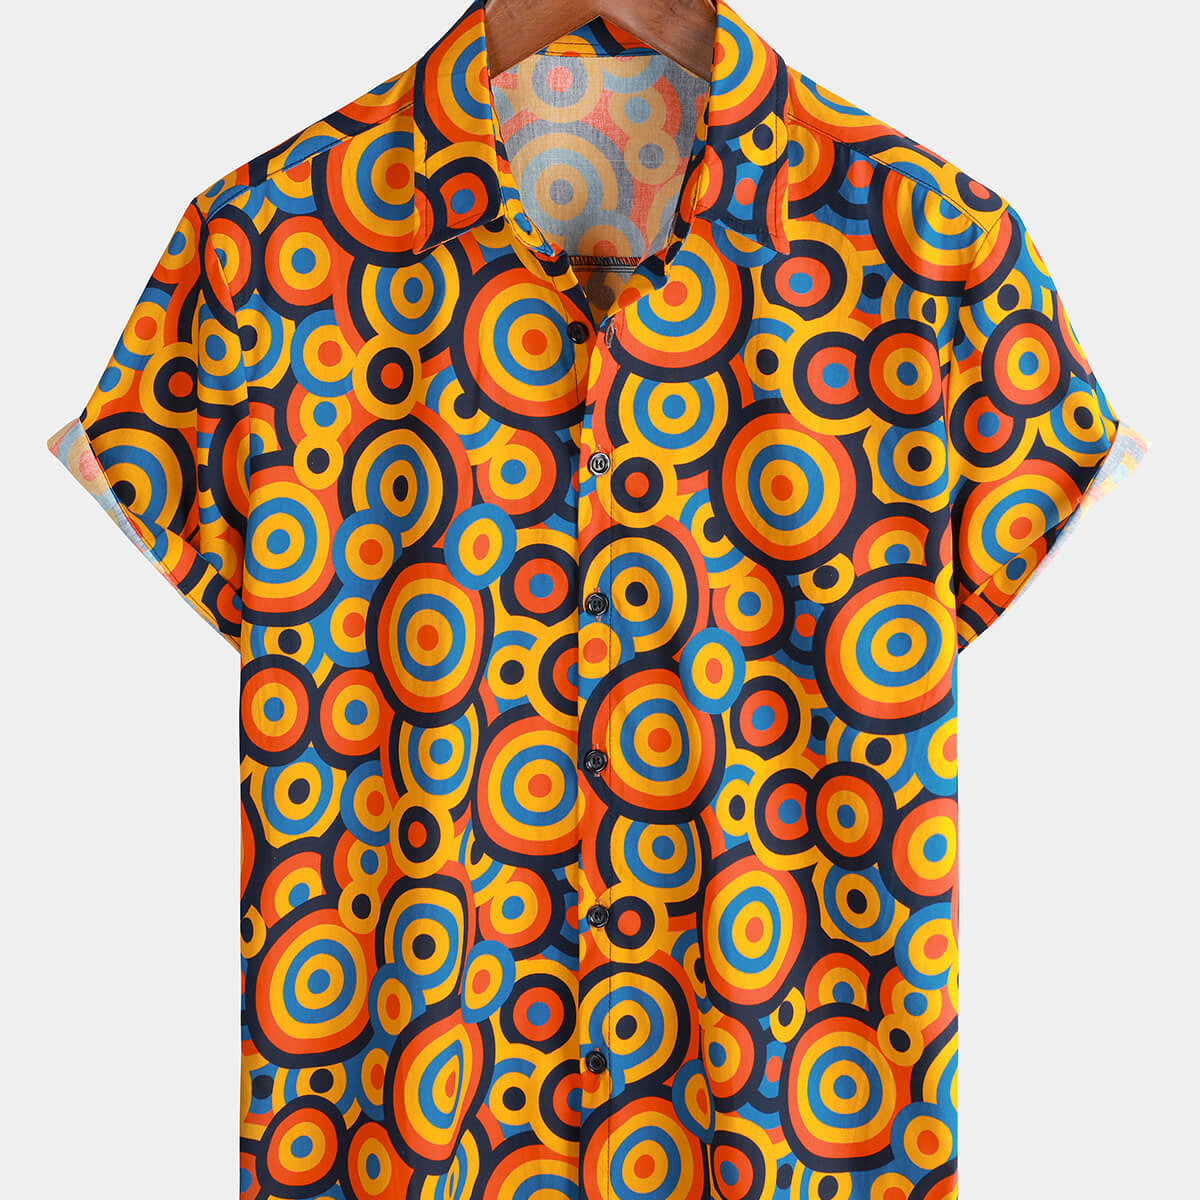 Chemise boutonnée rétro orange des années 70 pour hommes, cercle géométrique vintage